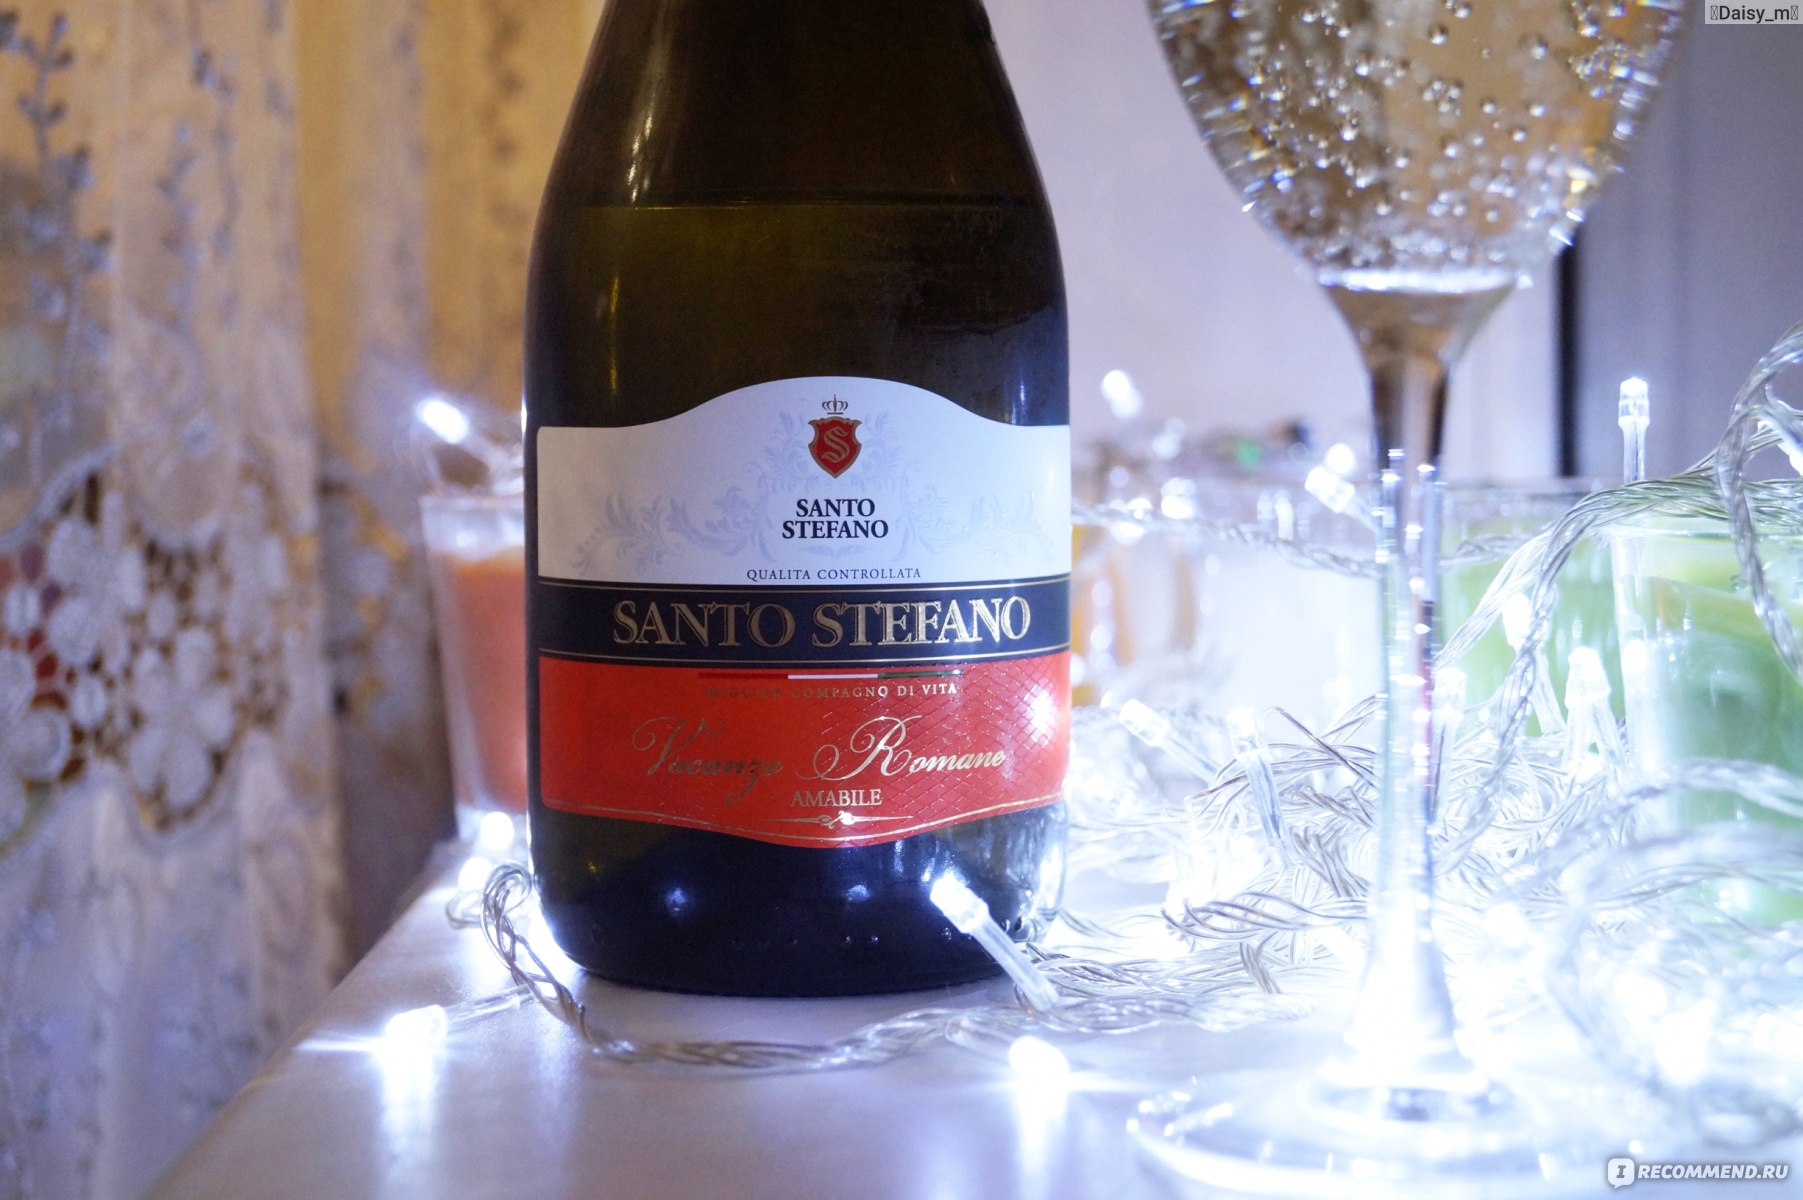 Шампанское Santo Stefano vacanze Romane